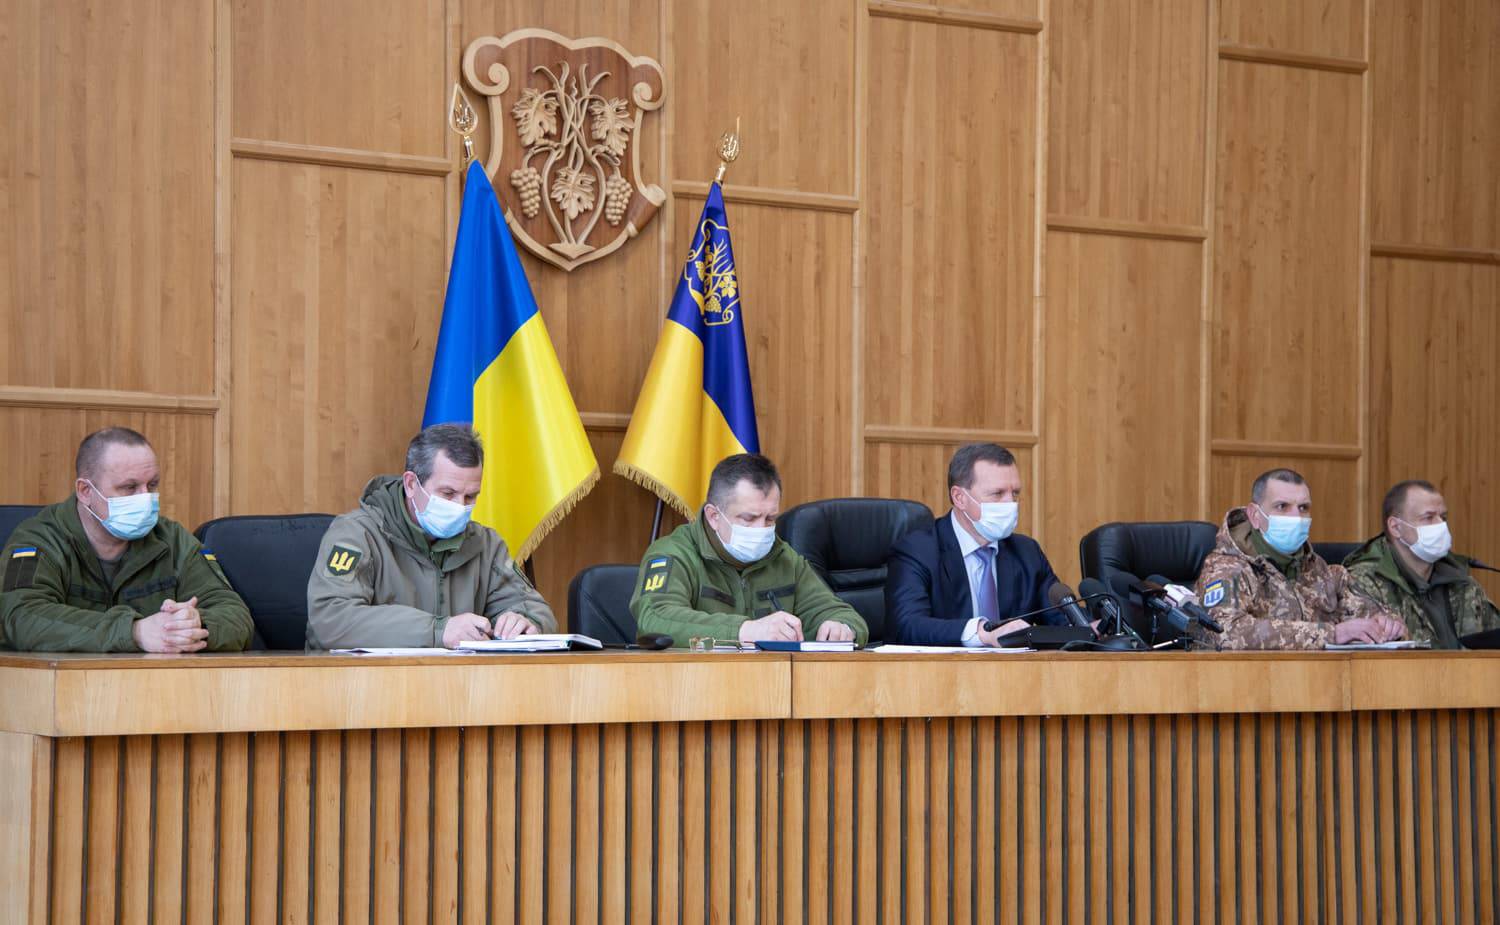 Брифінг щодо формування підрозділів територіальної оборони відбувся в Ужгородській міськраді